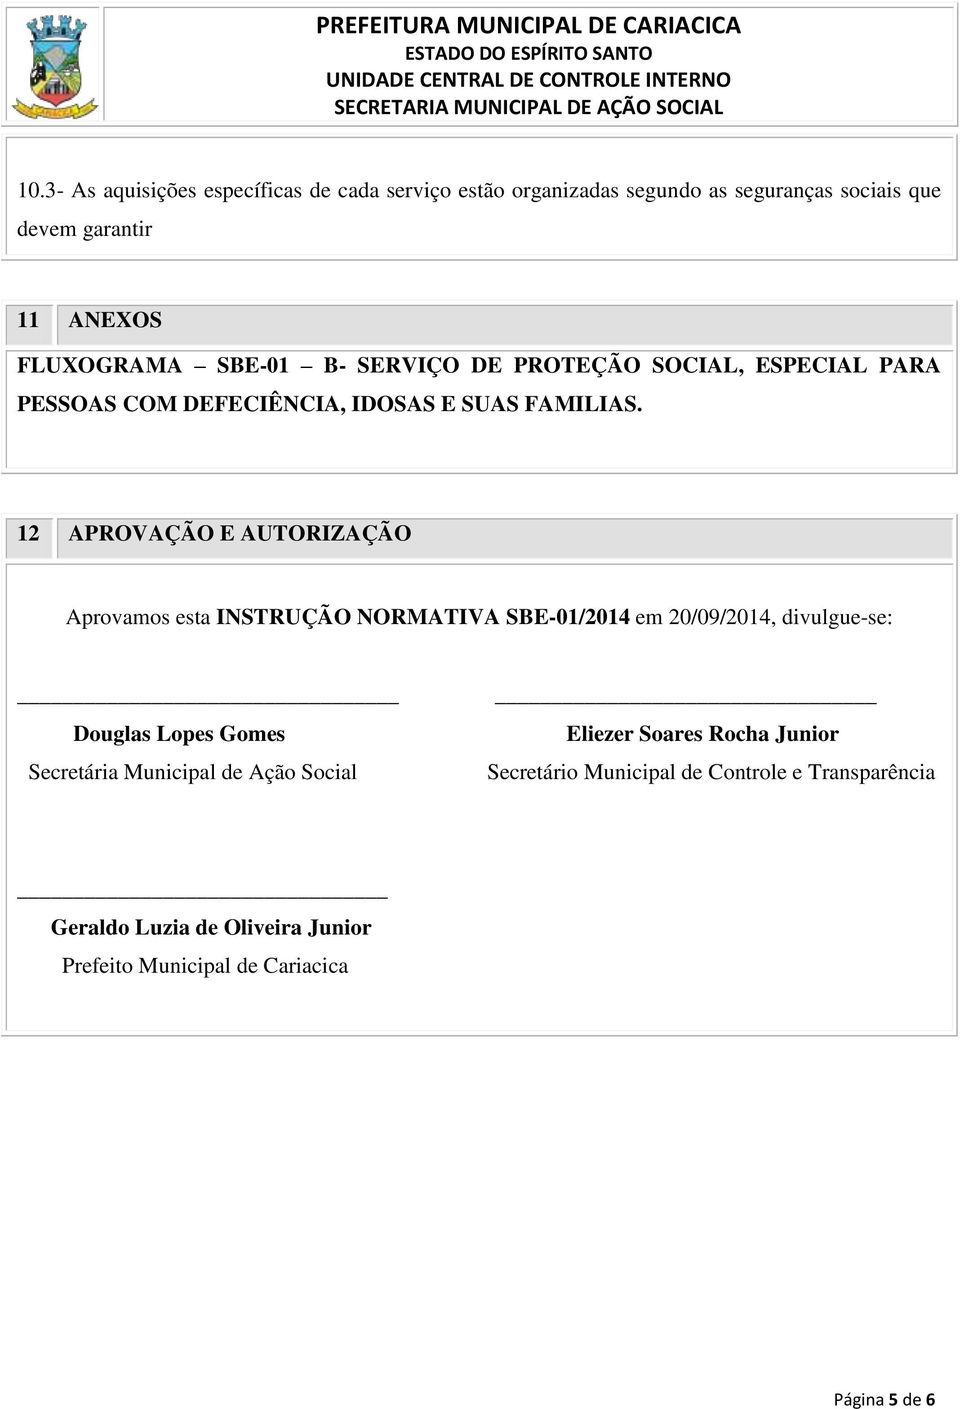 12 APROVAÇÃO E AUTORIZAÇÃO Aprovamos esta INSTRUÇÃO NORMATIVA SBE-01/2014 em 20/09/2014, divulgue-se: Douglas Lopes Gomes Secretária